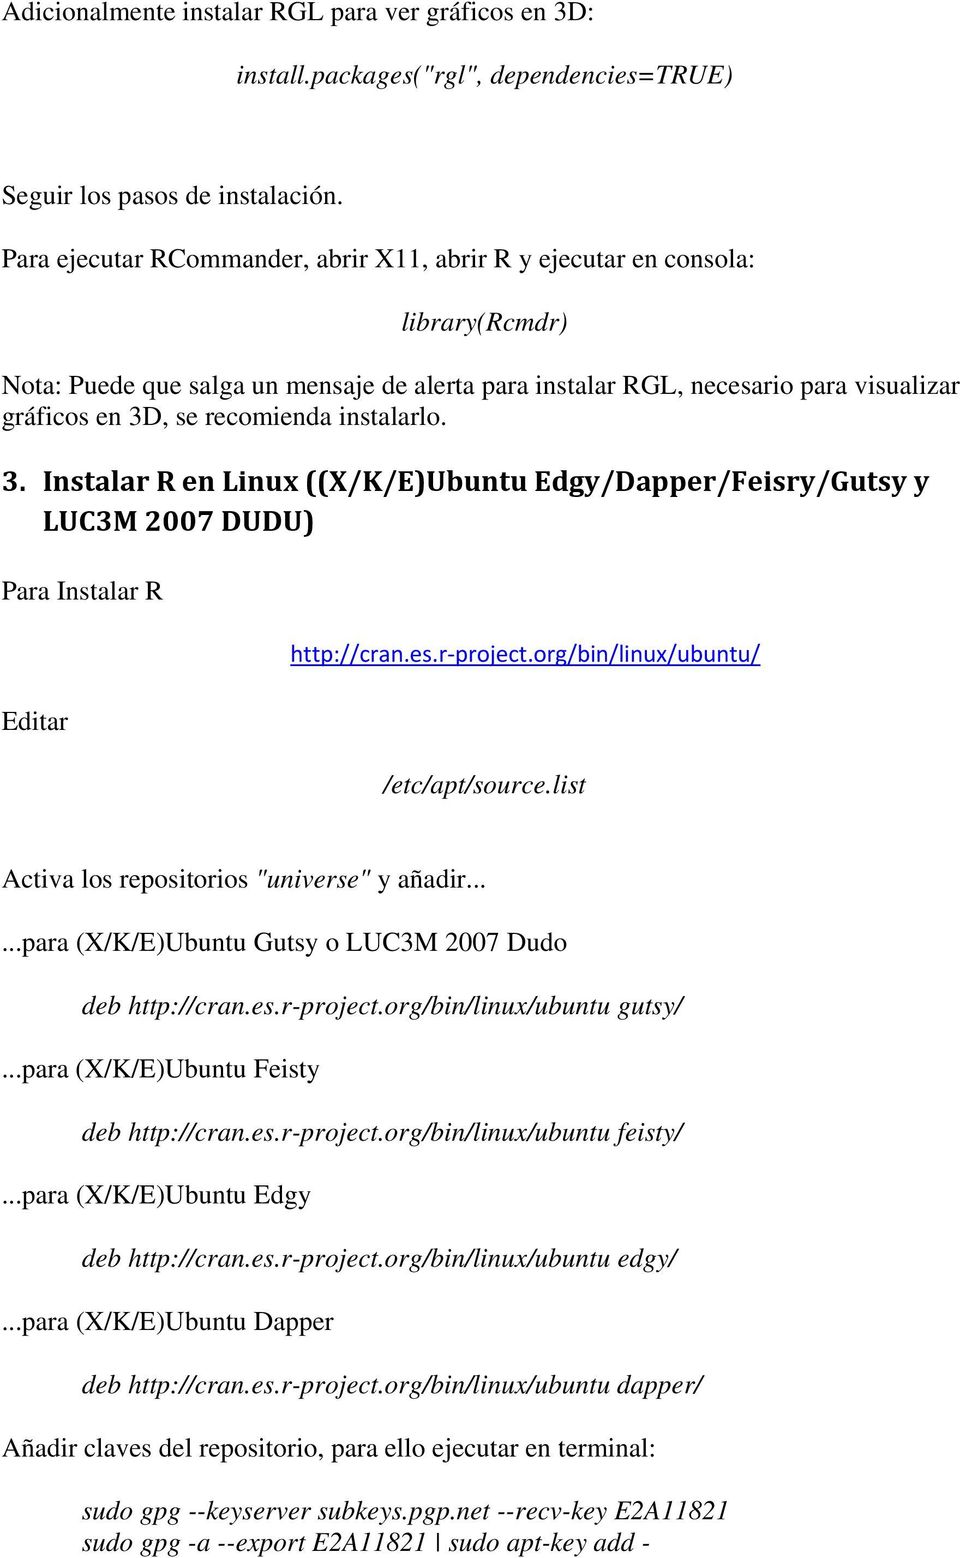 , se recomienda instalarlo. 3. Instalar R en Linux ((X/K/E)Ubuntu Edgy/Dapper/Feisry/Gutsy y LUC3M 2007 DUDU) Para Instalar R Editar http://cran.es.r project.org/bin/linux/ubuntu/ /etc/apt/source.